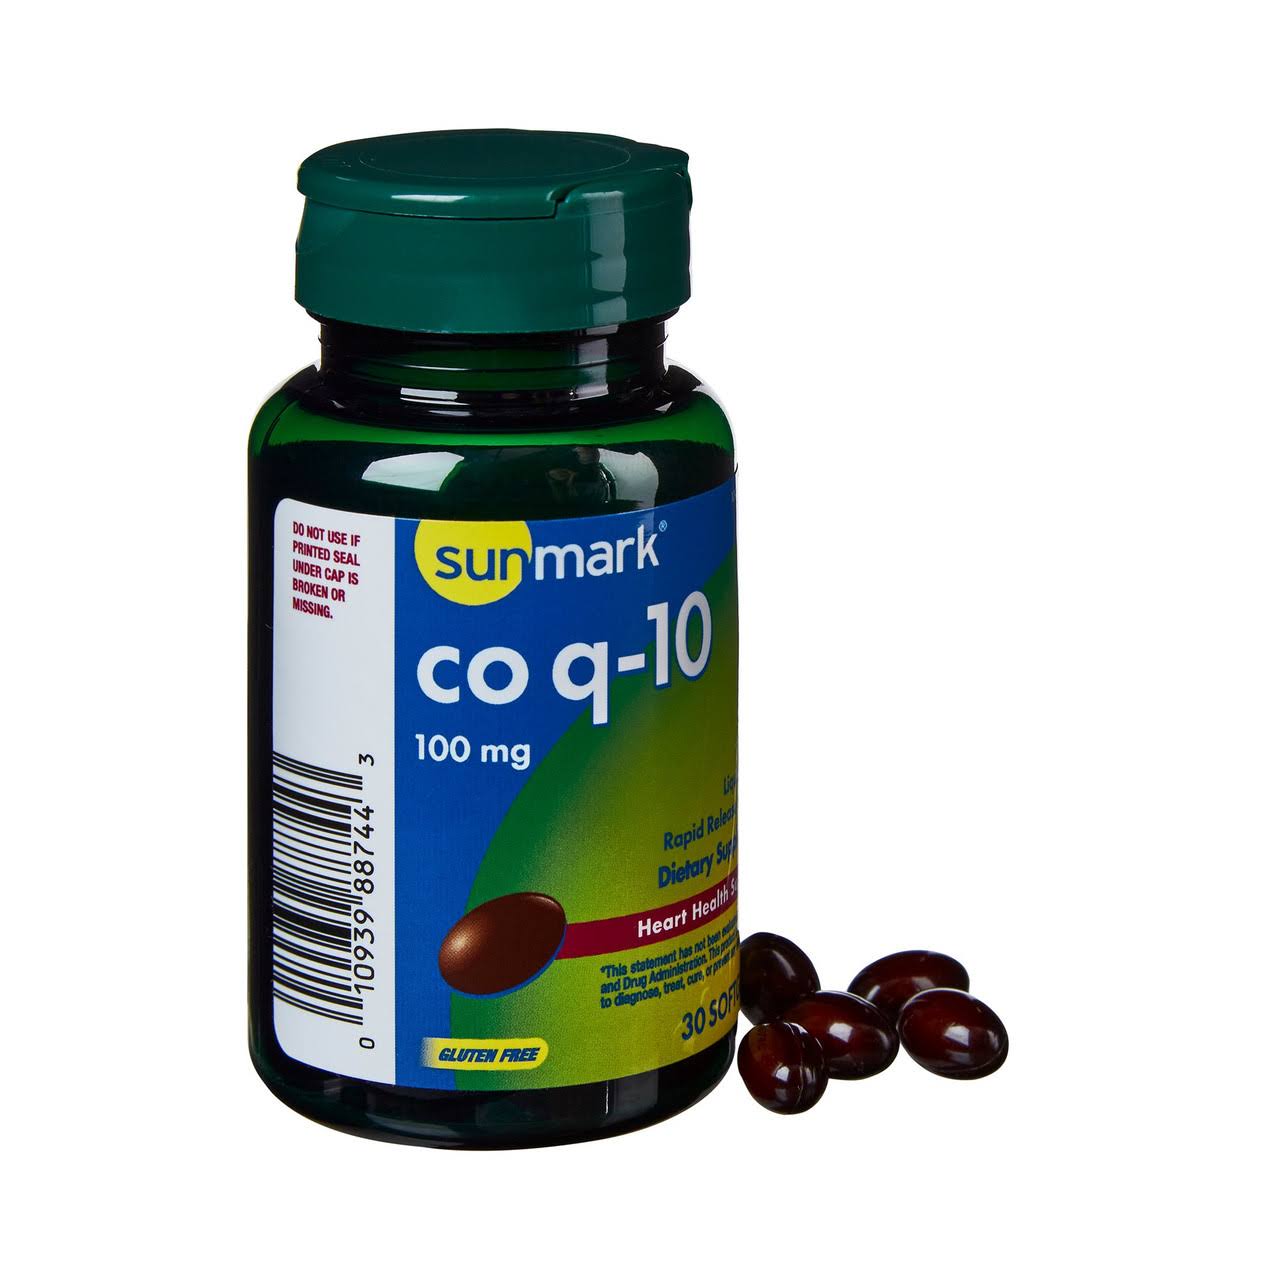 Sunmark Coenzyme Q-10 Vitamin Supplement, 30 Softgels per Bottle